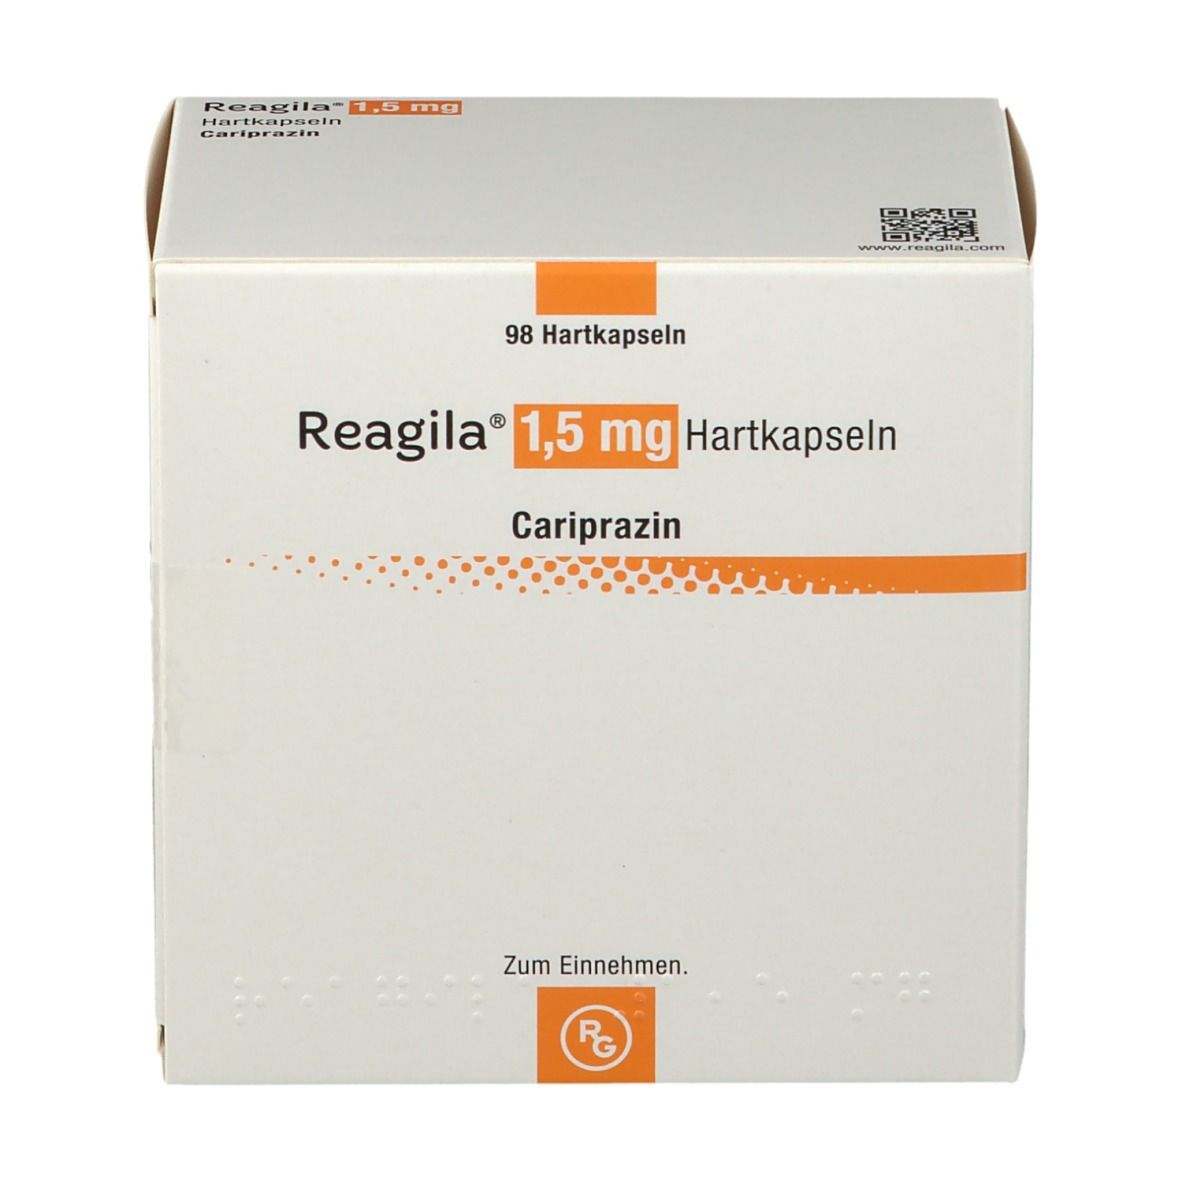 Reagila® 1,5 mg